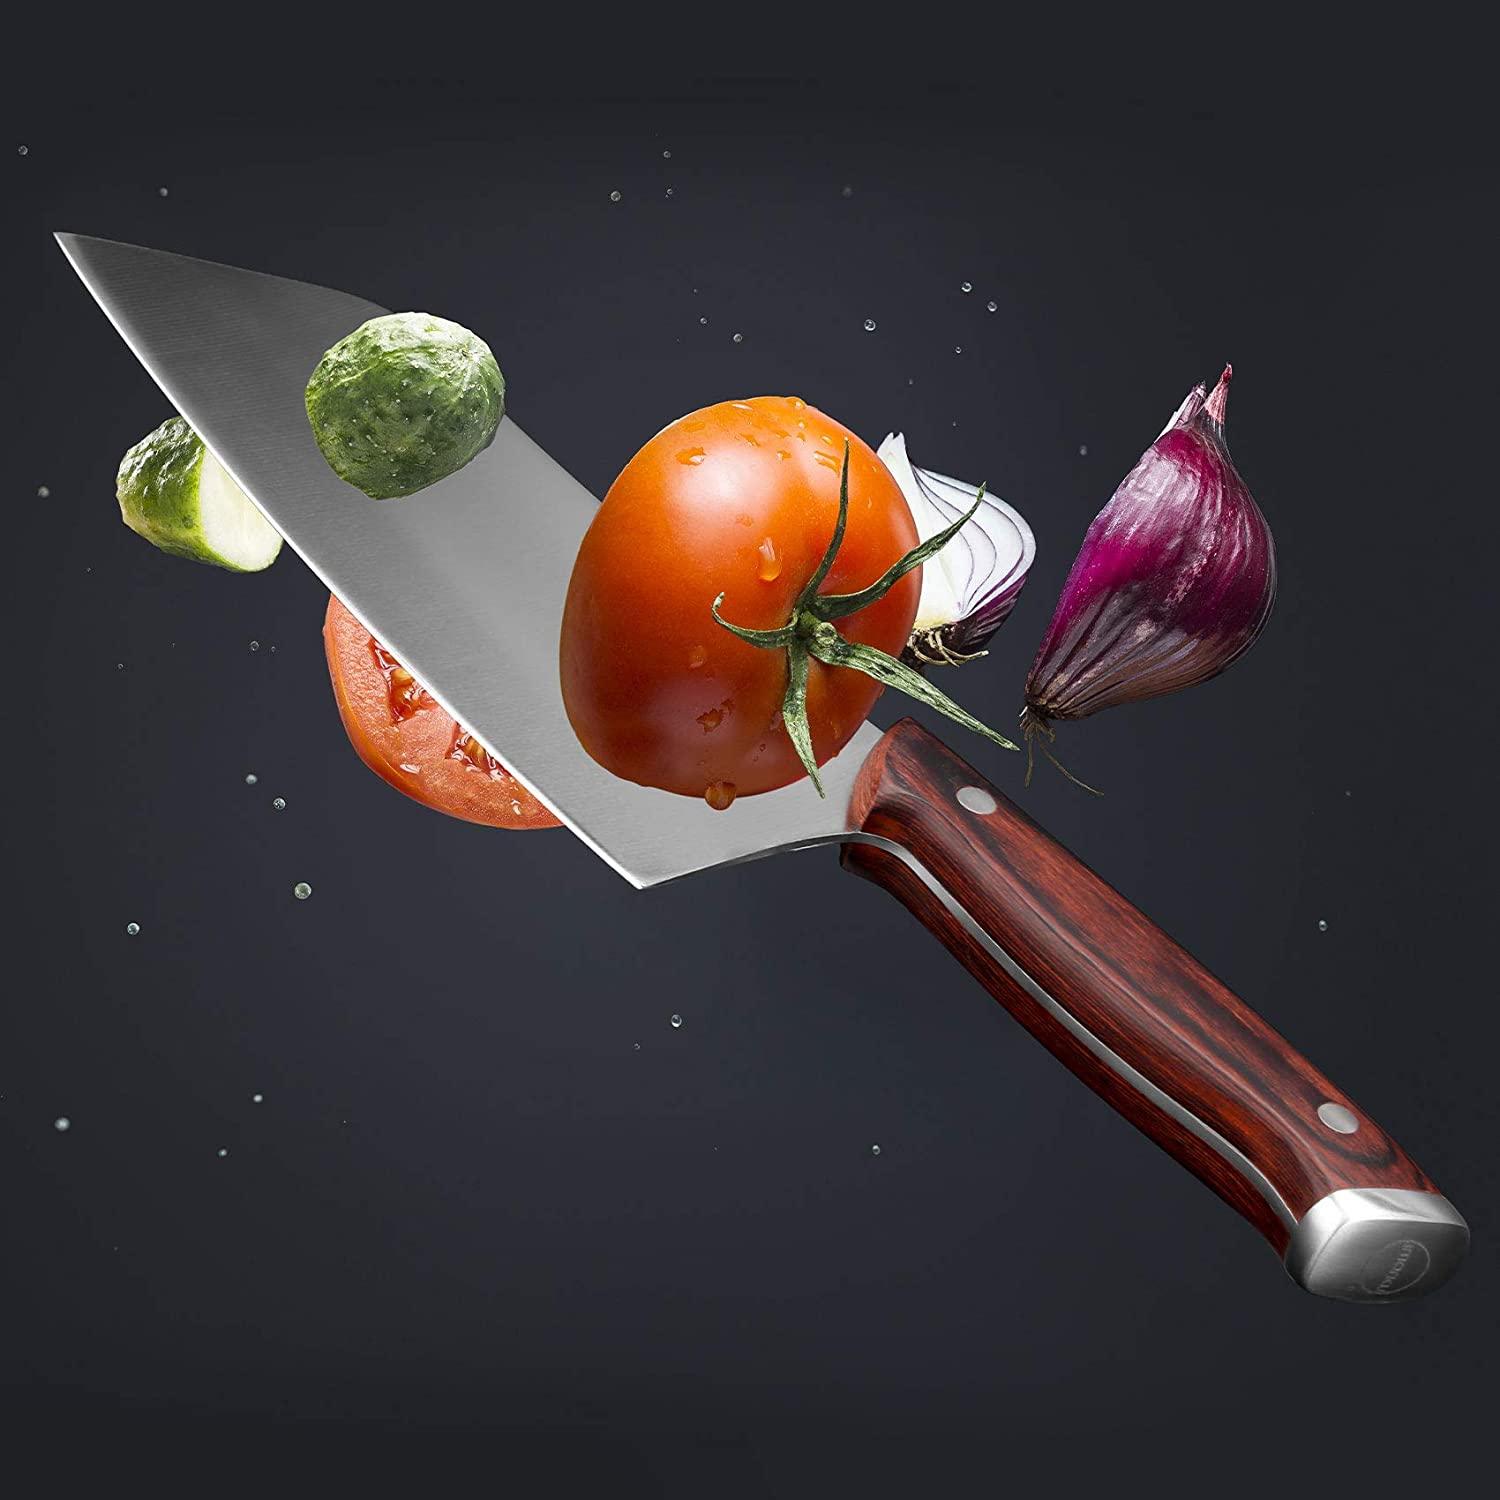 7-inch Vegetable Cleaver Knife, Meat Cleaver German - iMarku ® - iMarku ®